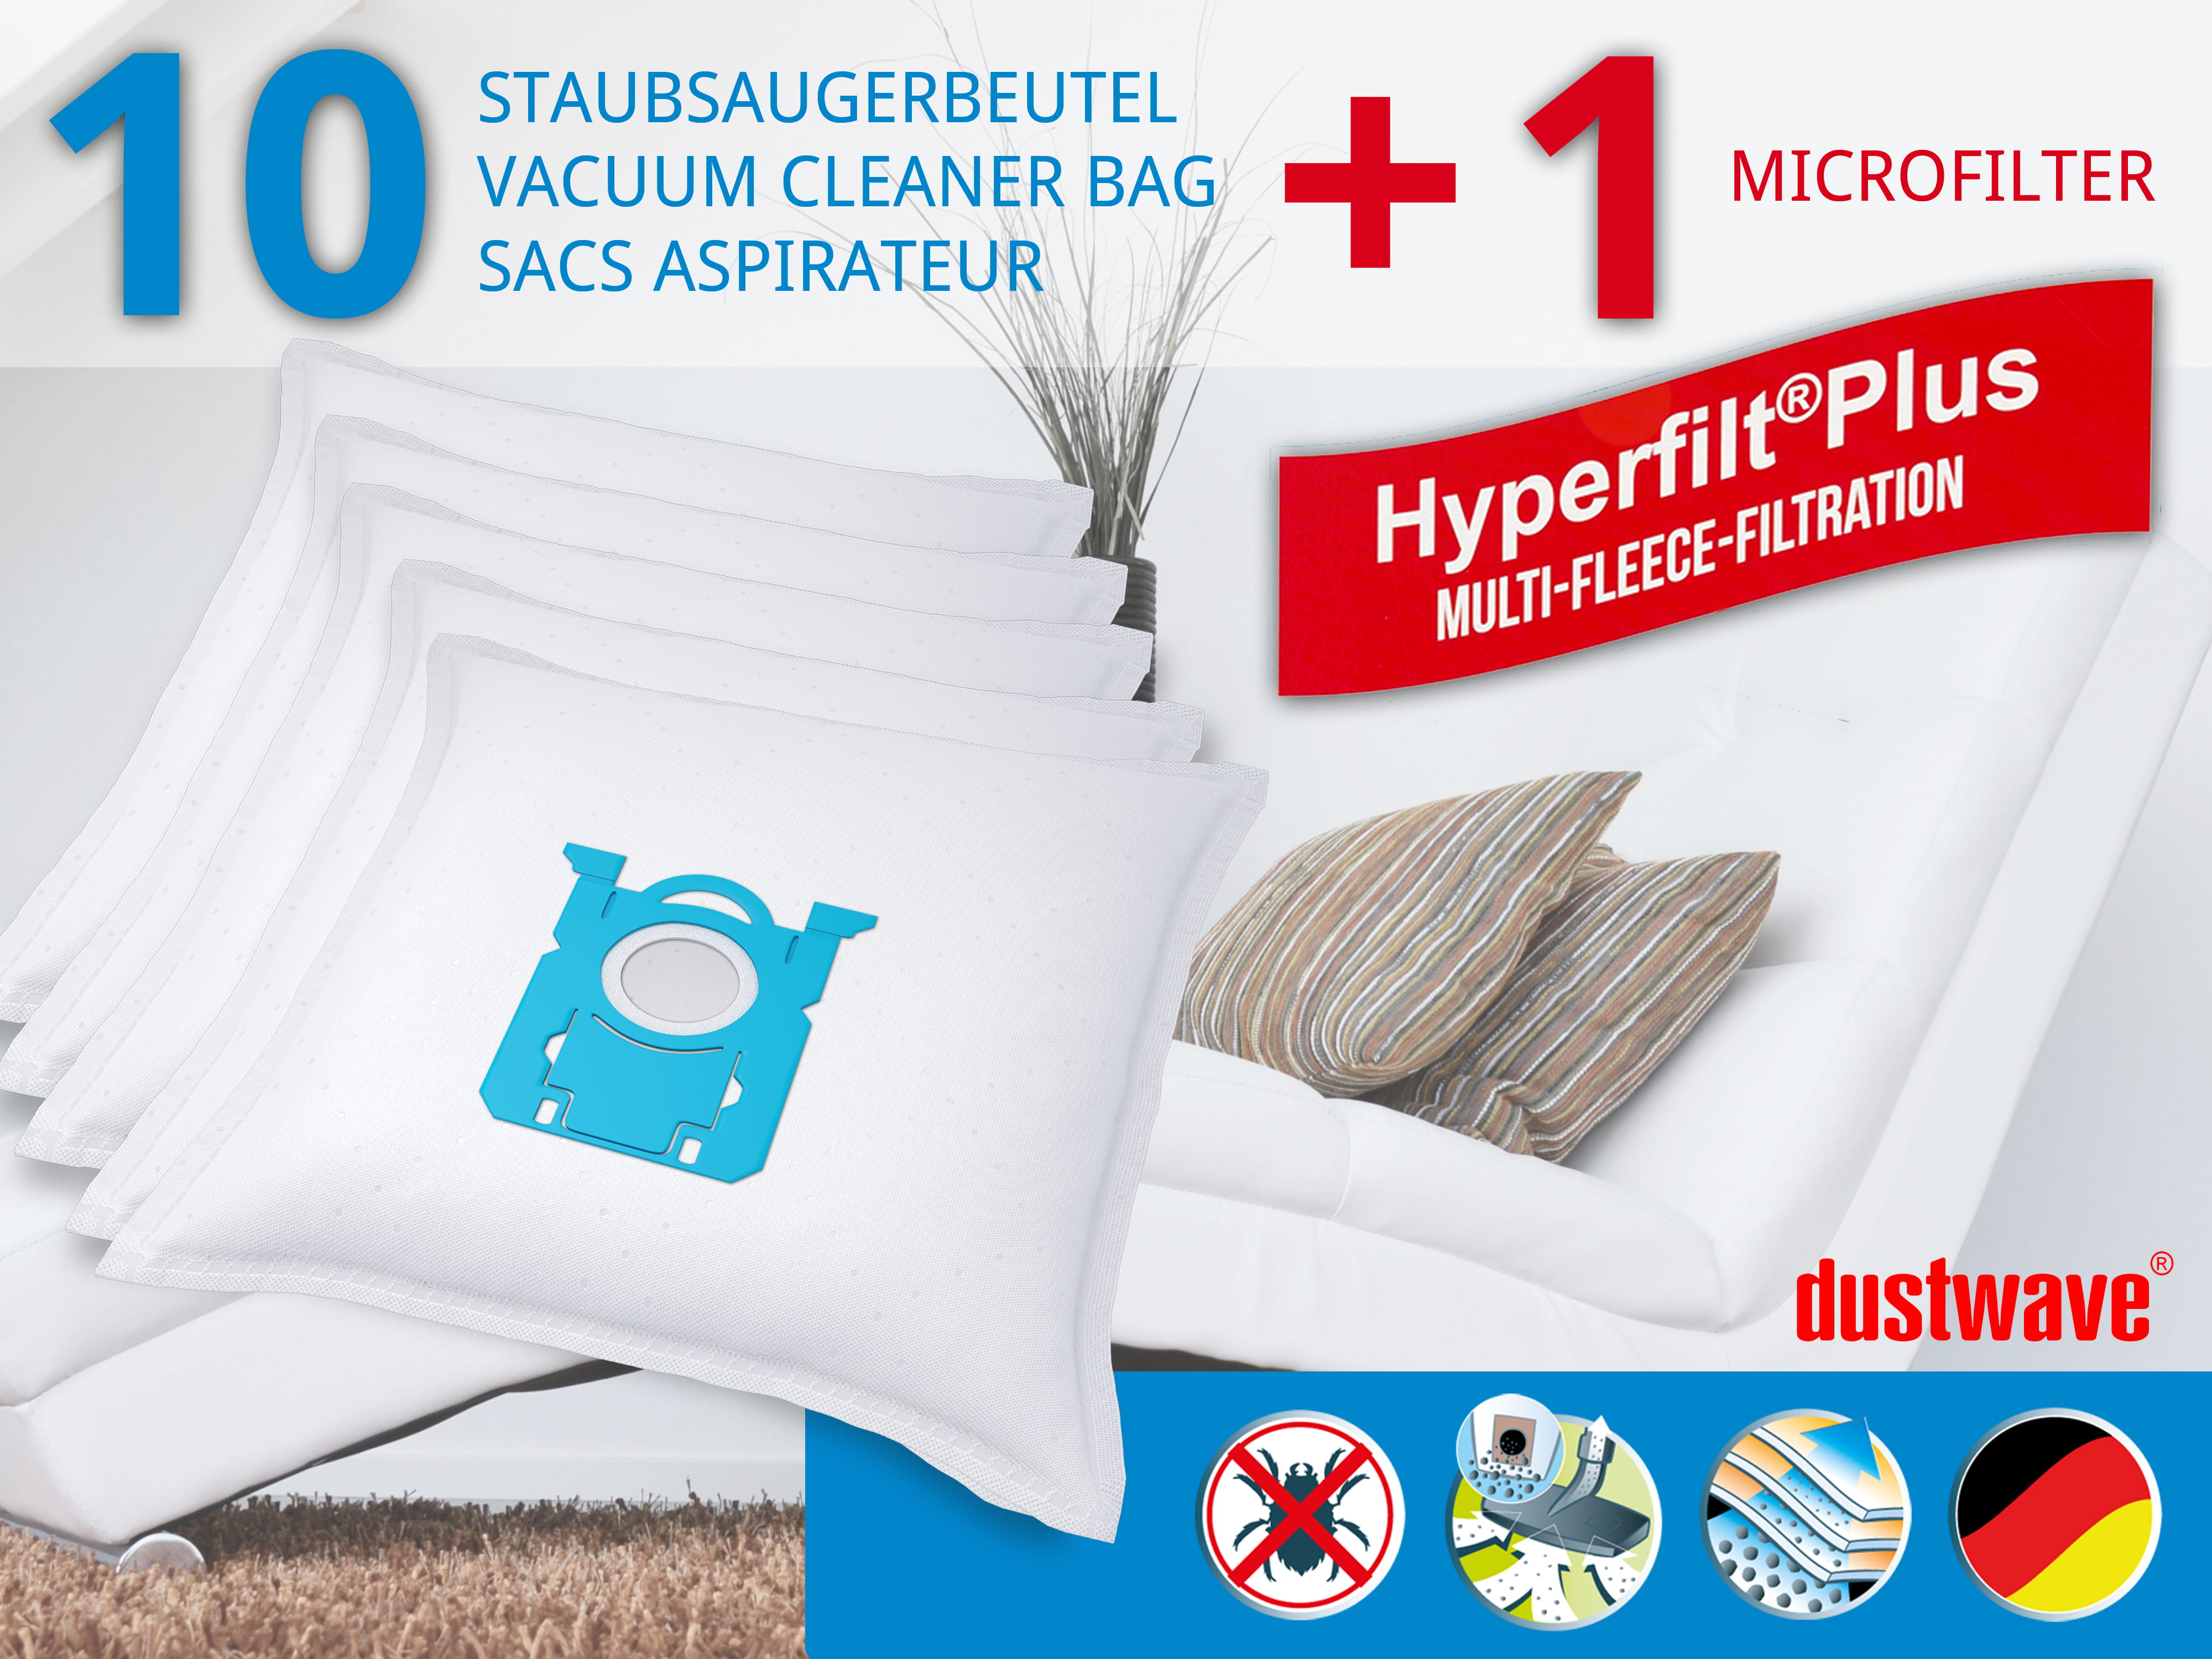 Dustwave® 10 Staubsaugerbeutel für AEG VX9-4-H4MG - hocheffizient, mehrlagiges Mikrovlies mit Hygieneverschluss - Made in Germany